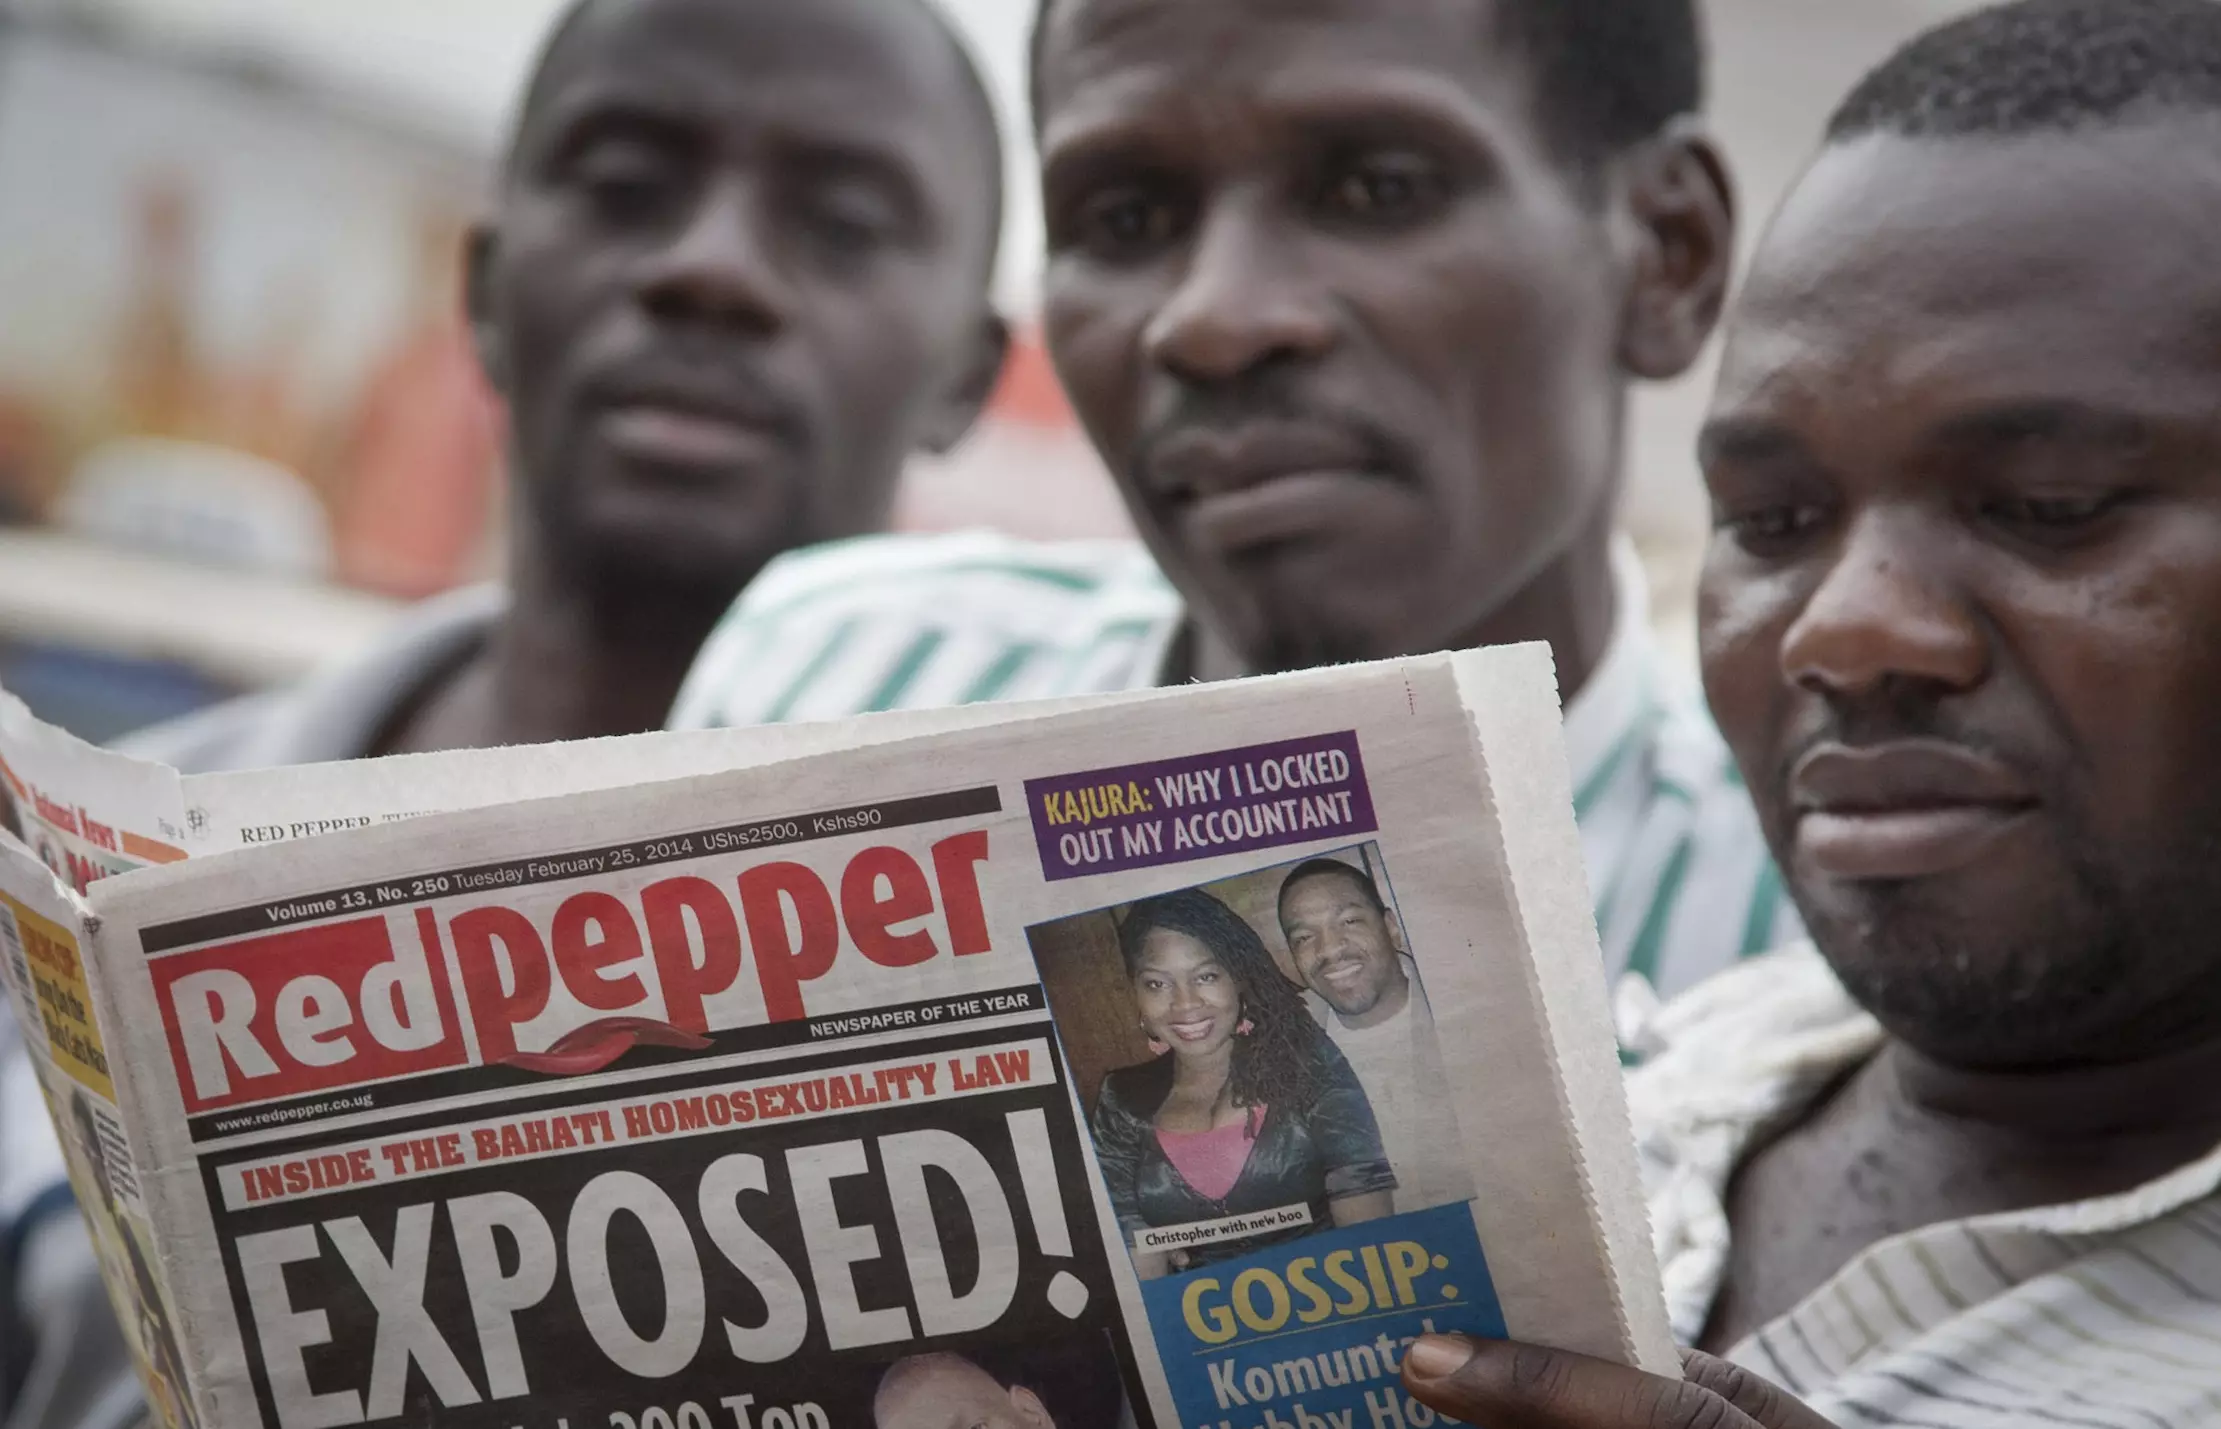 העיתונים באוגנדה מפרסמים את כתובותיהם של "ההומואים הבולטים" במדינה